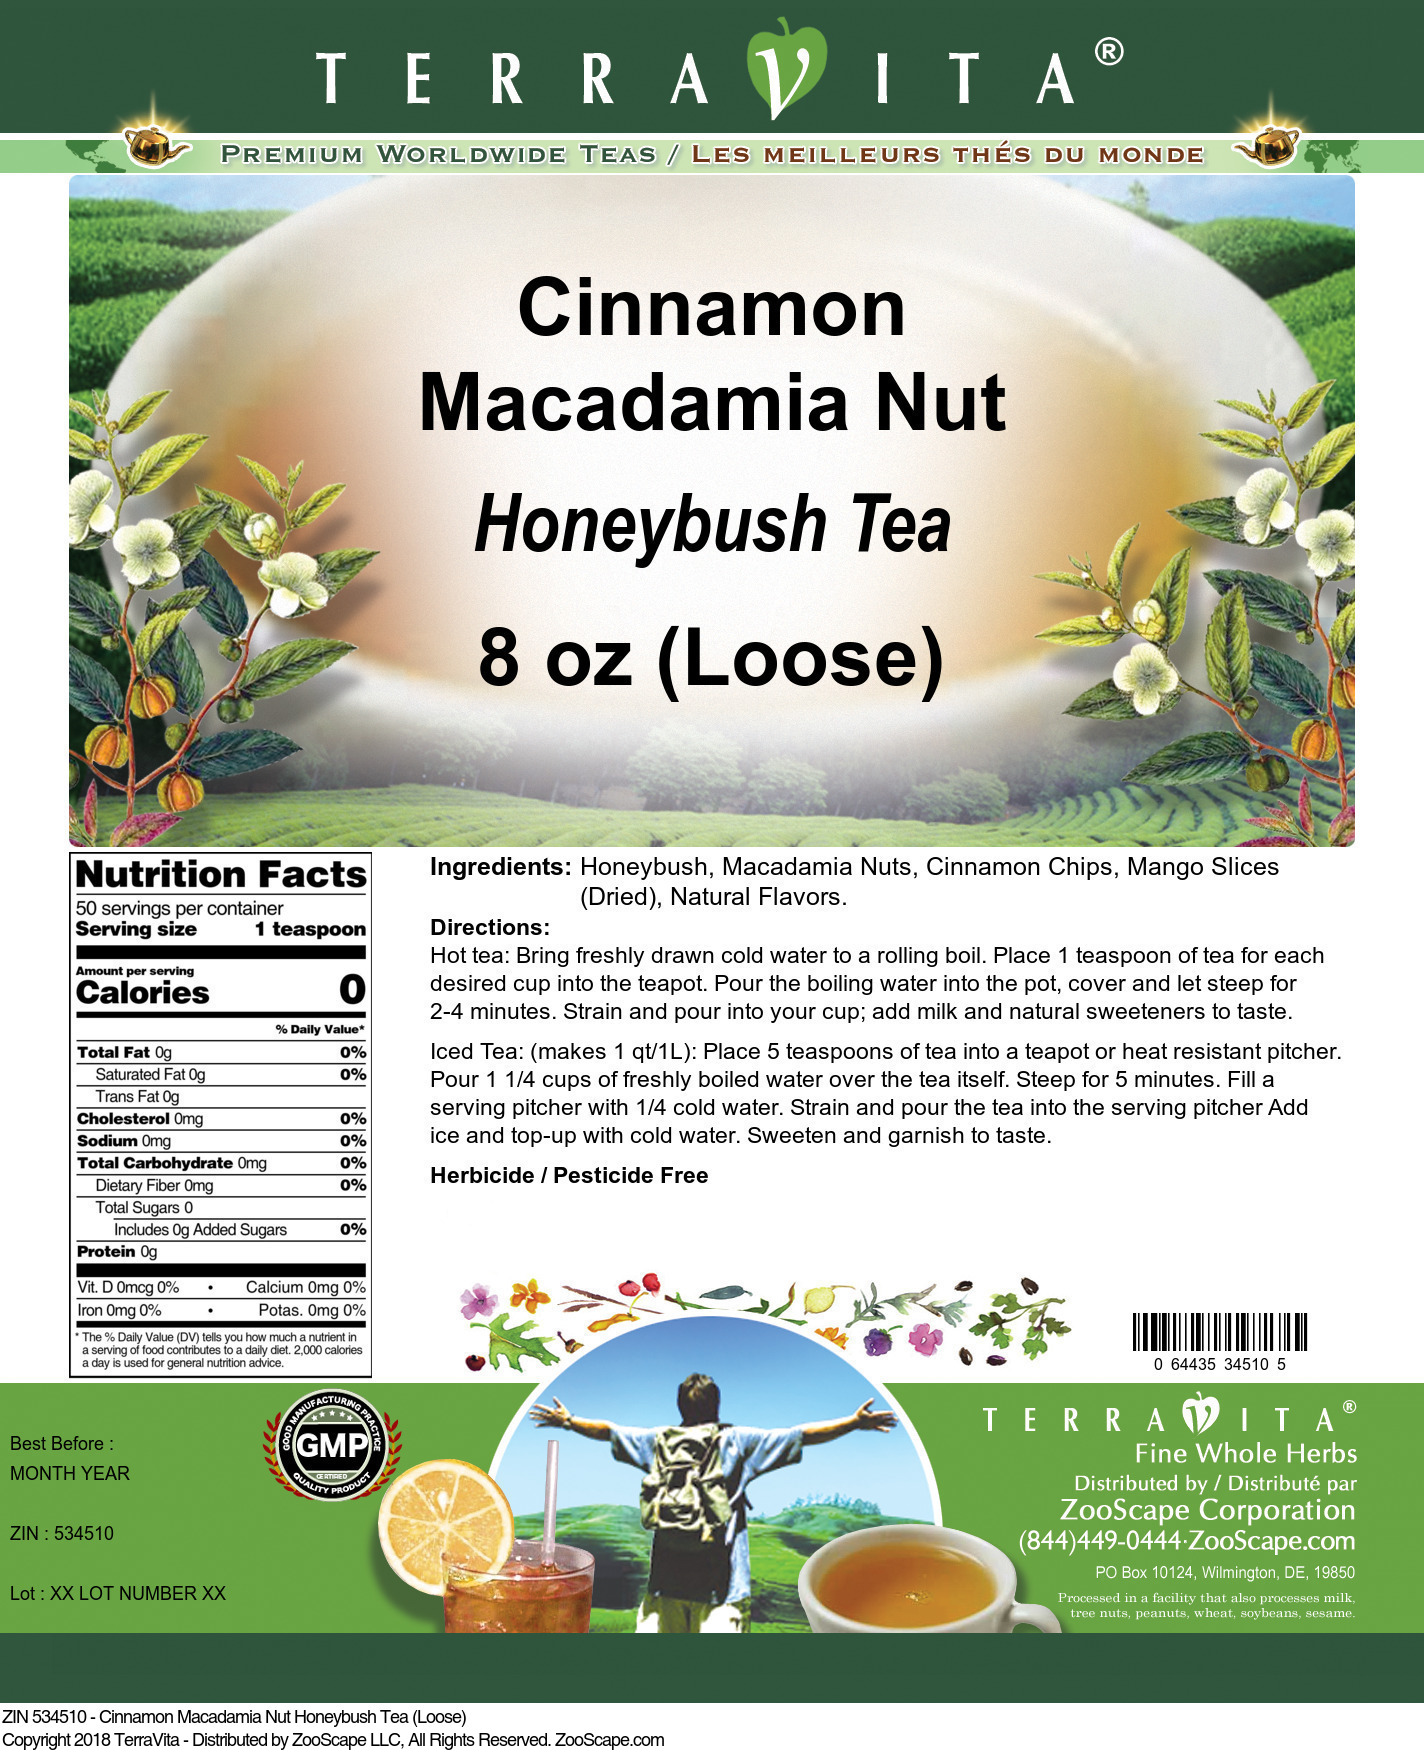 Cinnamon Macadamia Nut Honeybush Tea (Loose) - Label